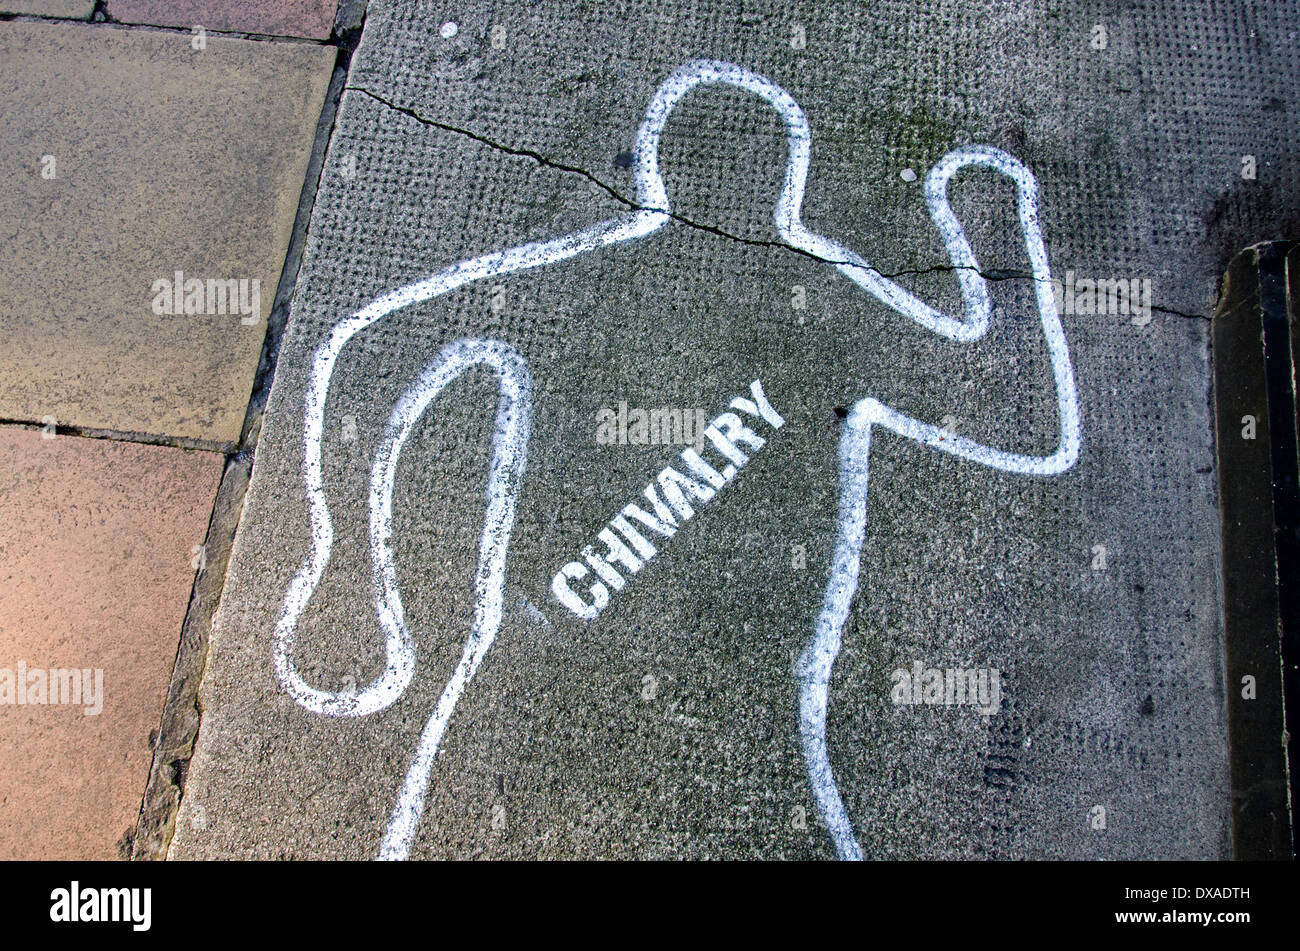 Cavalleria è morto - la sagoma di un corpo e la parola "Cavalleria' disegnata sul marciapiede. Foto Stock